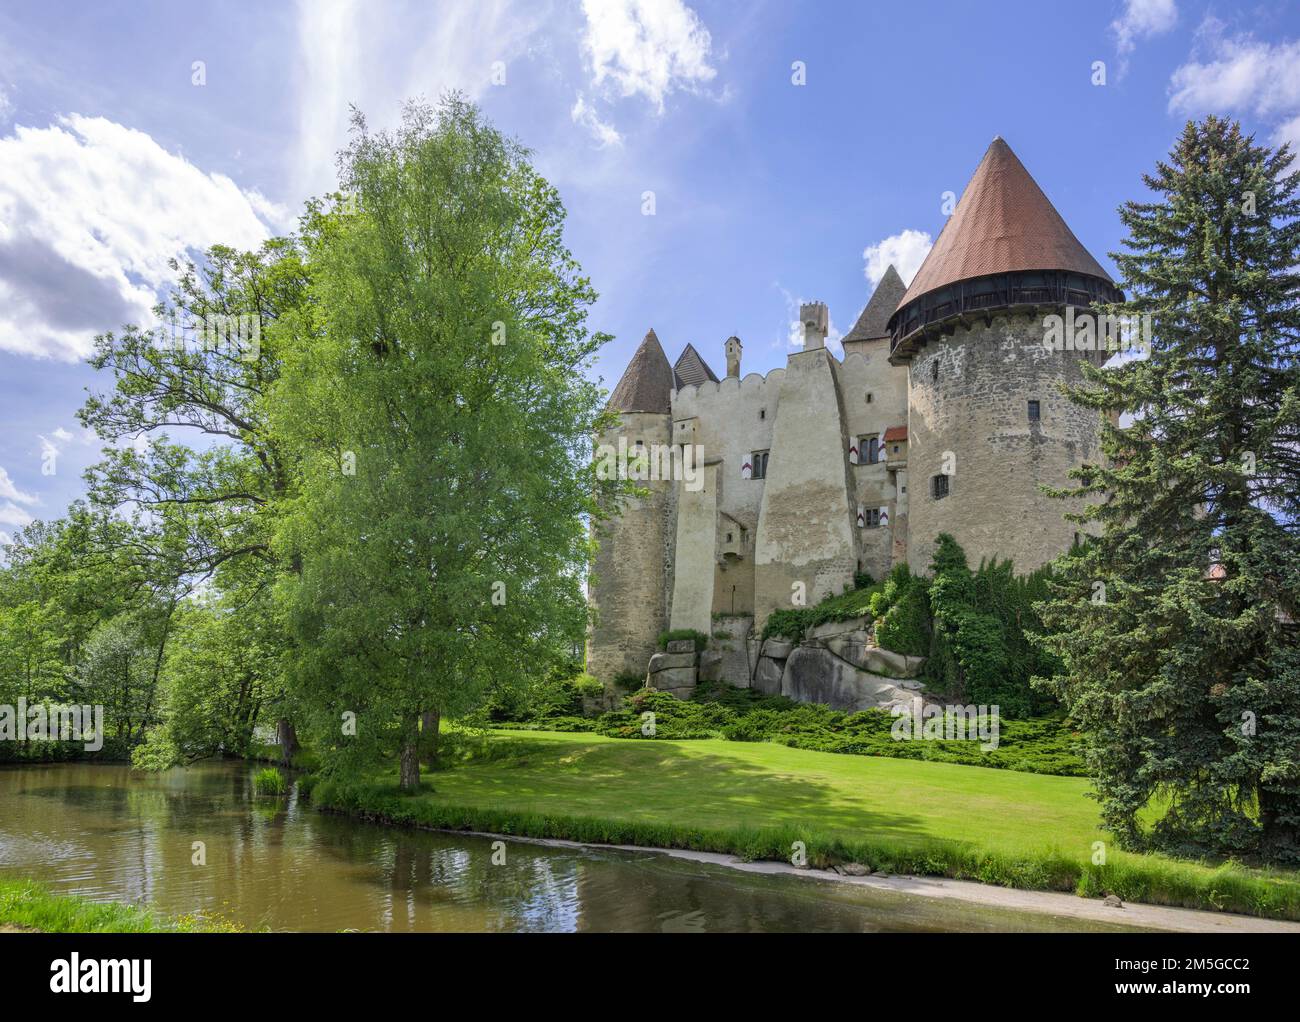 Castle with water-filled moat, Heidenreichstein, Lower Austria, Austria Stock Photo